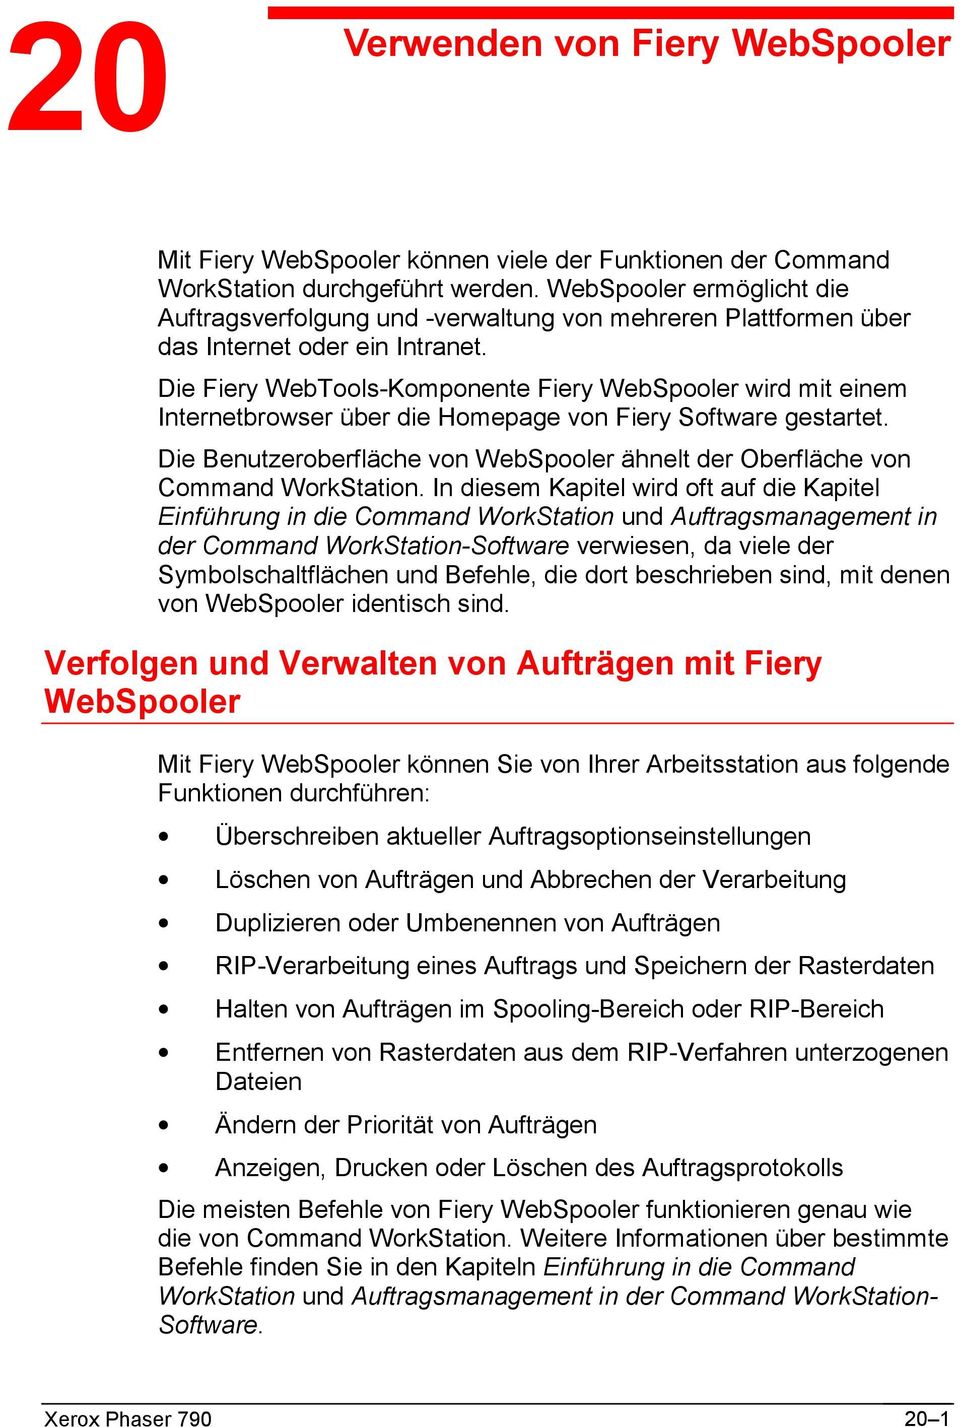 Die Fiery WebTools-Komponente Fiery WebSpooler wird mit einem Internetbrowser über die Homepage von Fiery Software gestartet.